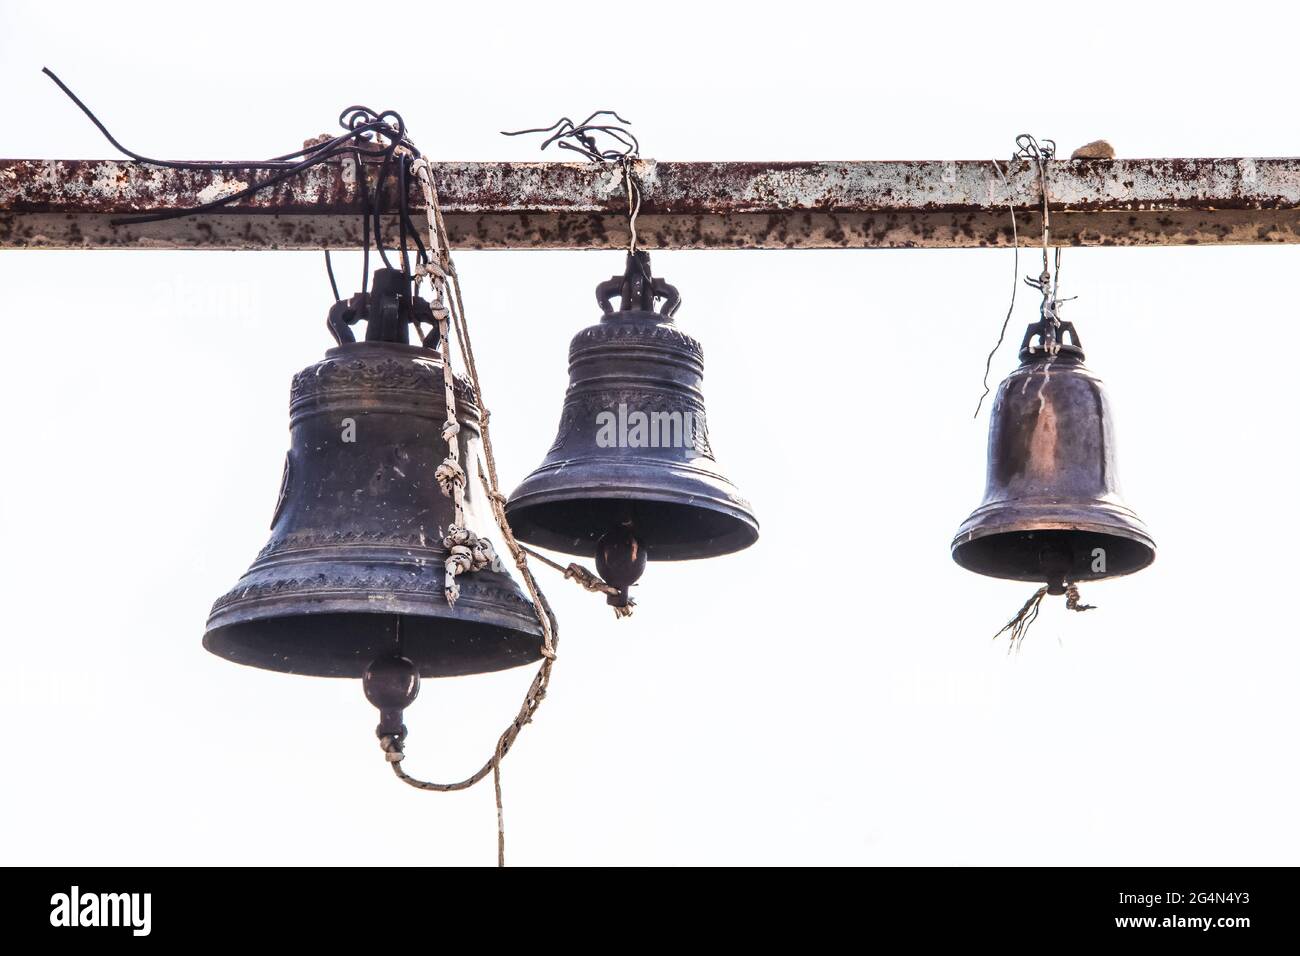 Alte gegossene Glocken, die an einem grungigen rostigen Metallträger in einem orthodoxen Kloster in Osteuropa hängen Stockfoto